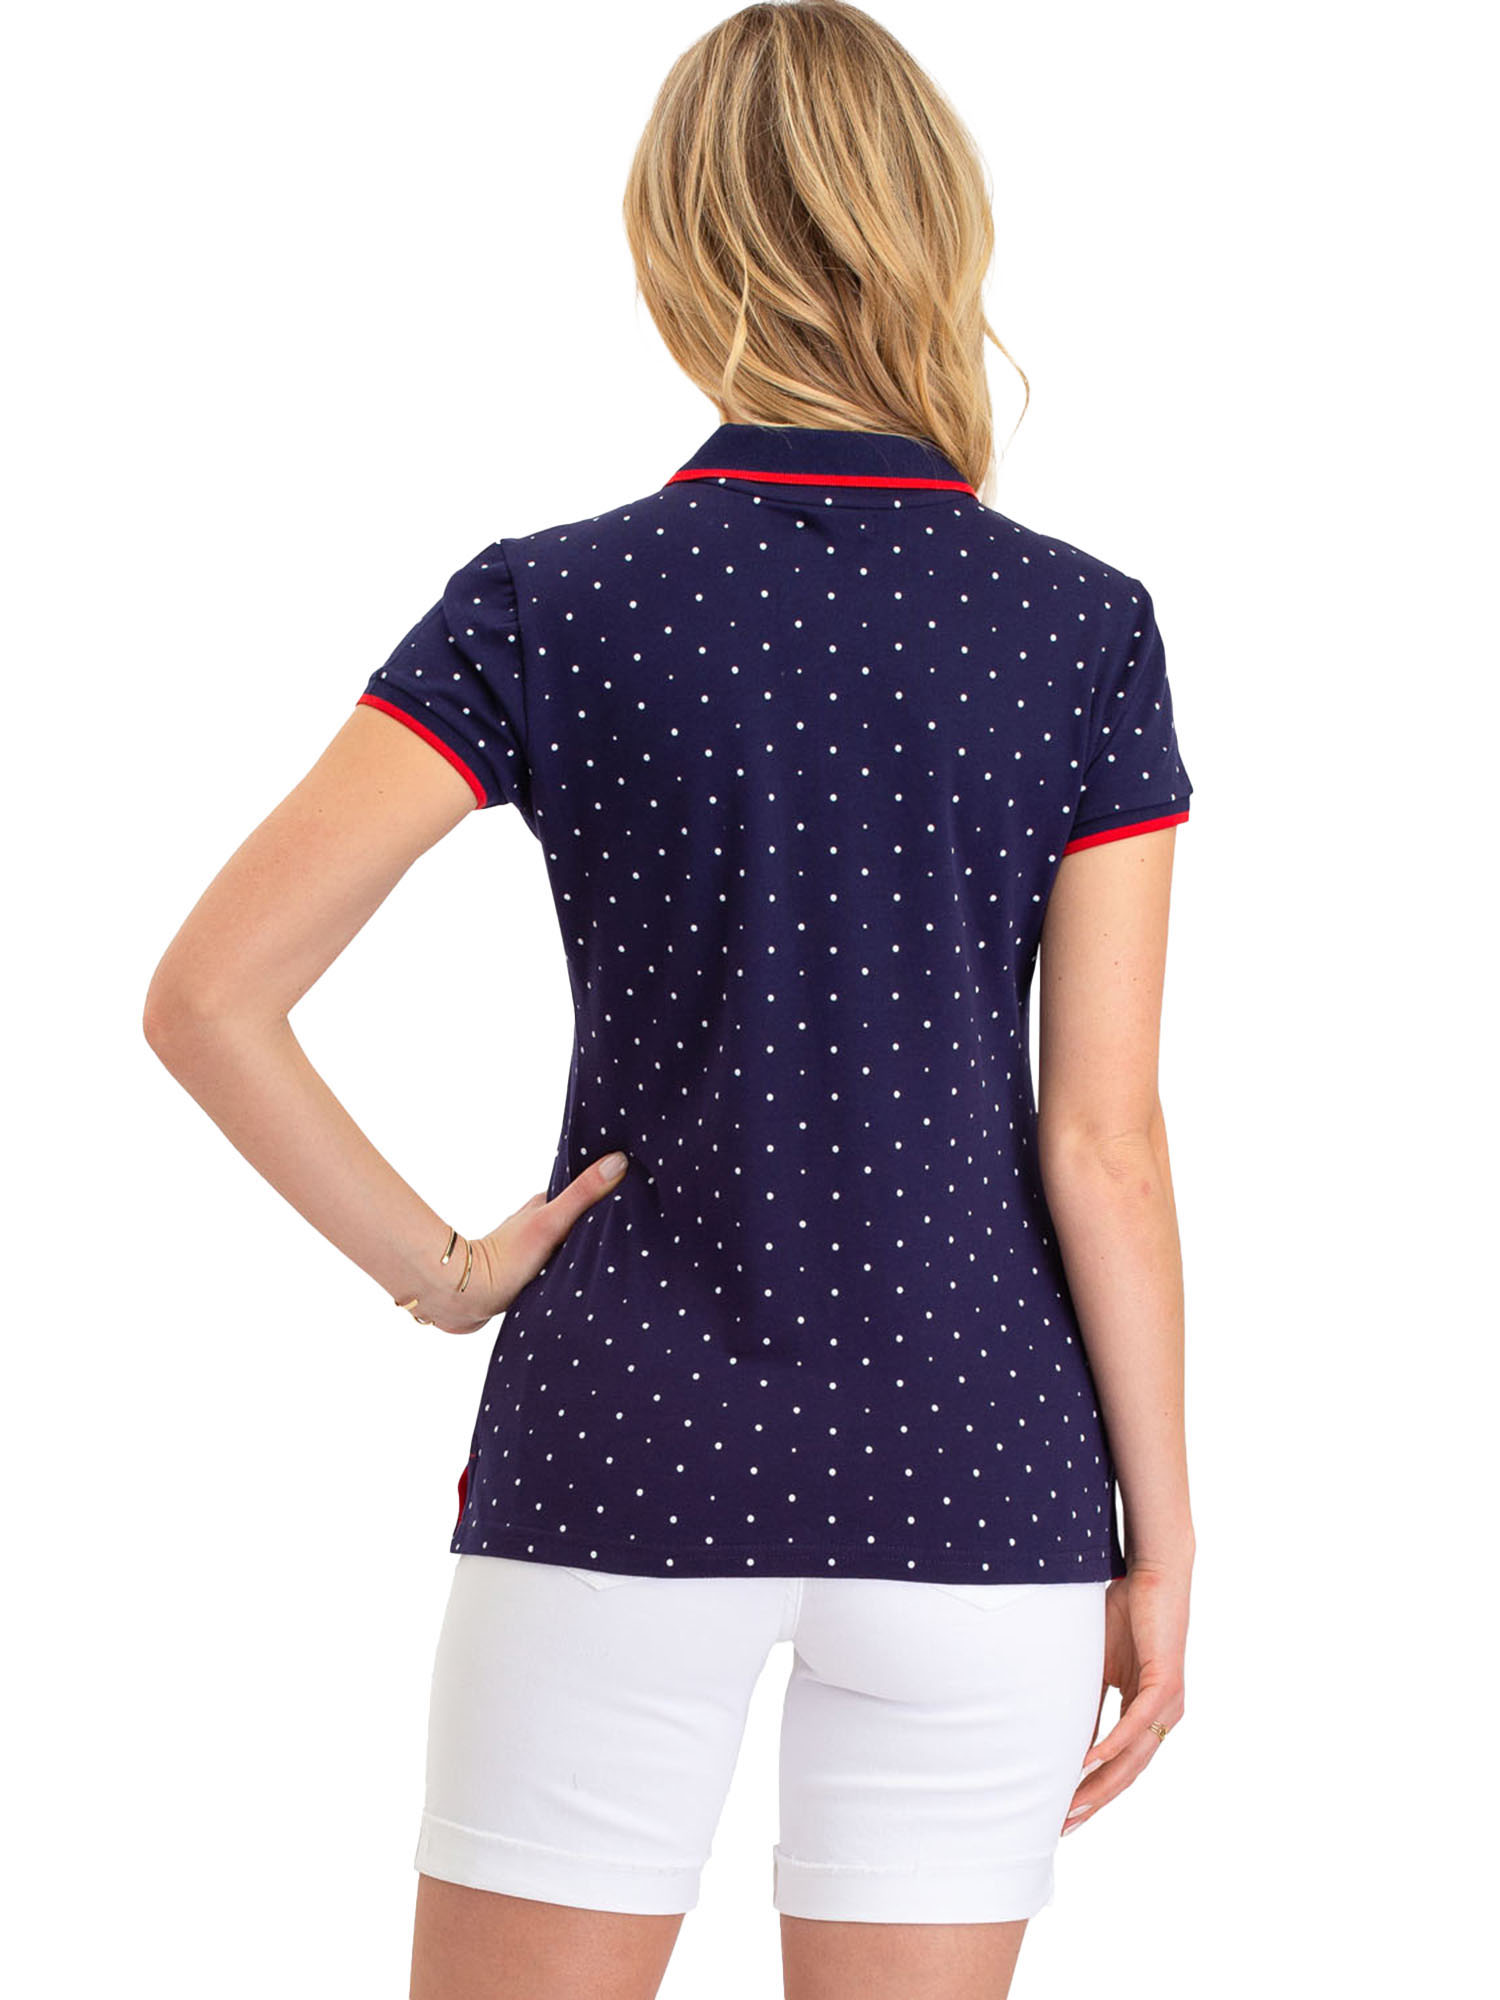 US Polo Assn. Classic Polo Dot Pique Short Sleeve Shirt, Women's - image 4 of 4